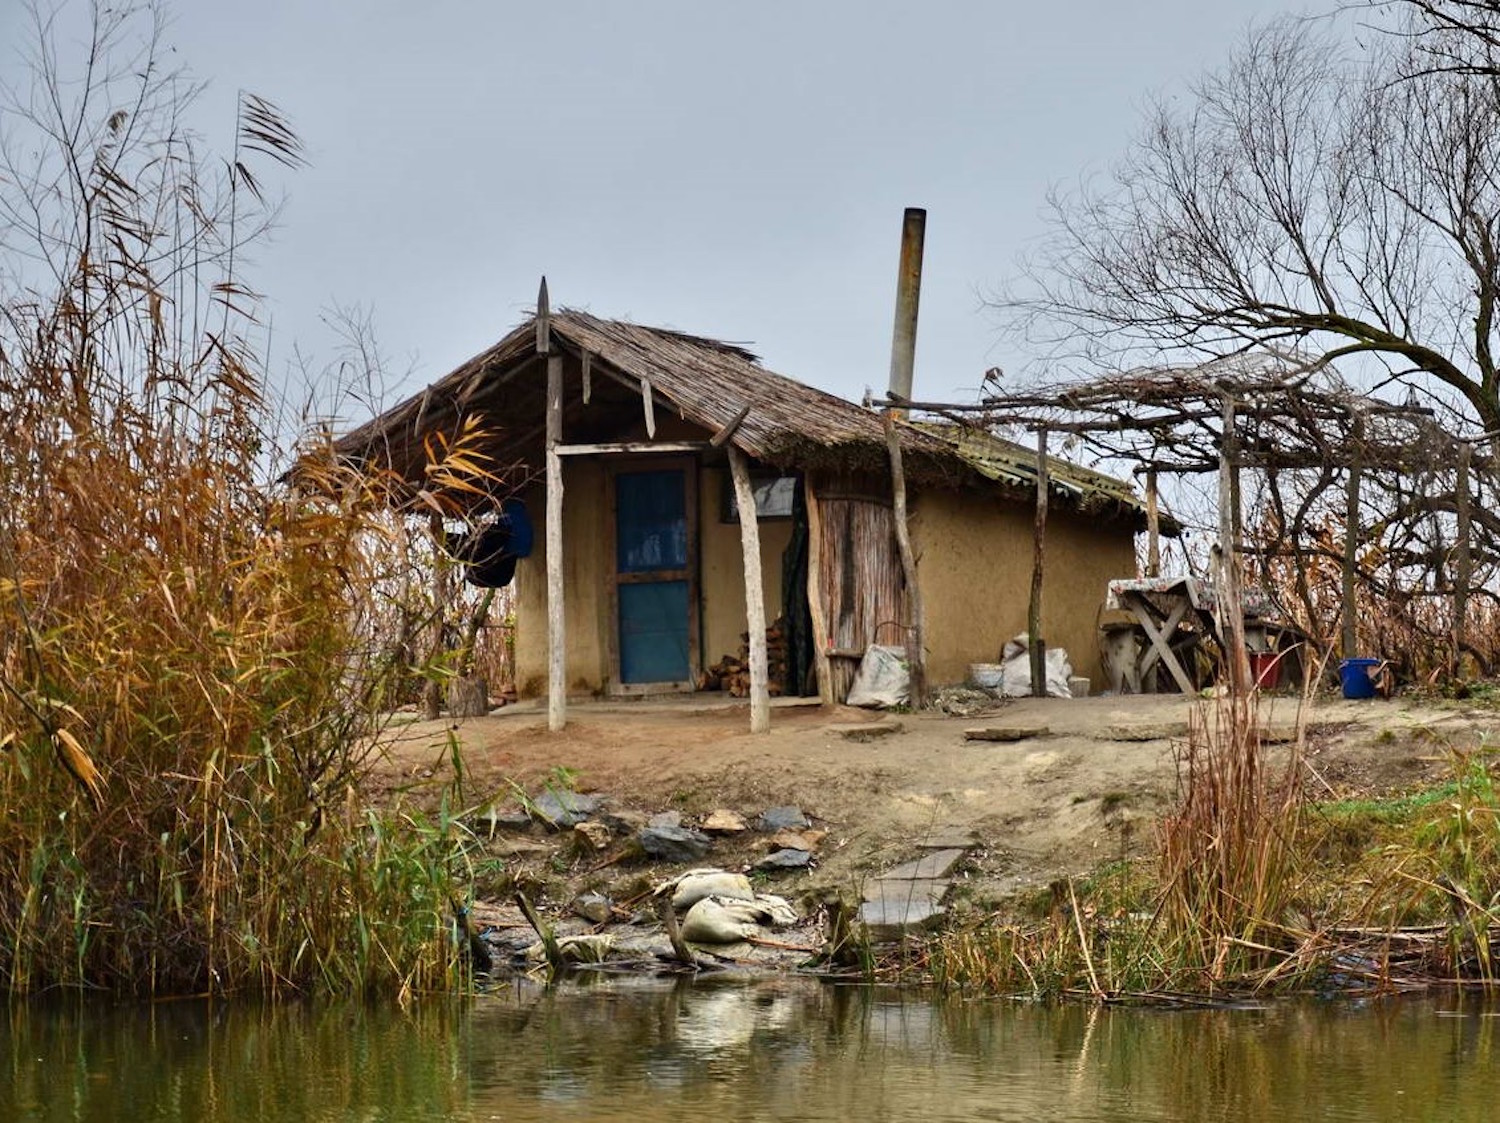 Cabane de pêcheur : c’est un abri temporaire, typique du Delta (photo : Cristian Miteltu)